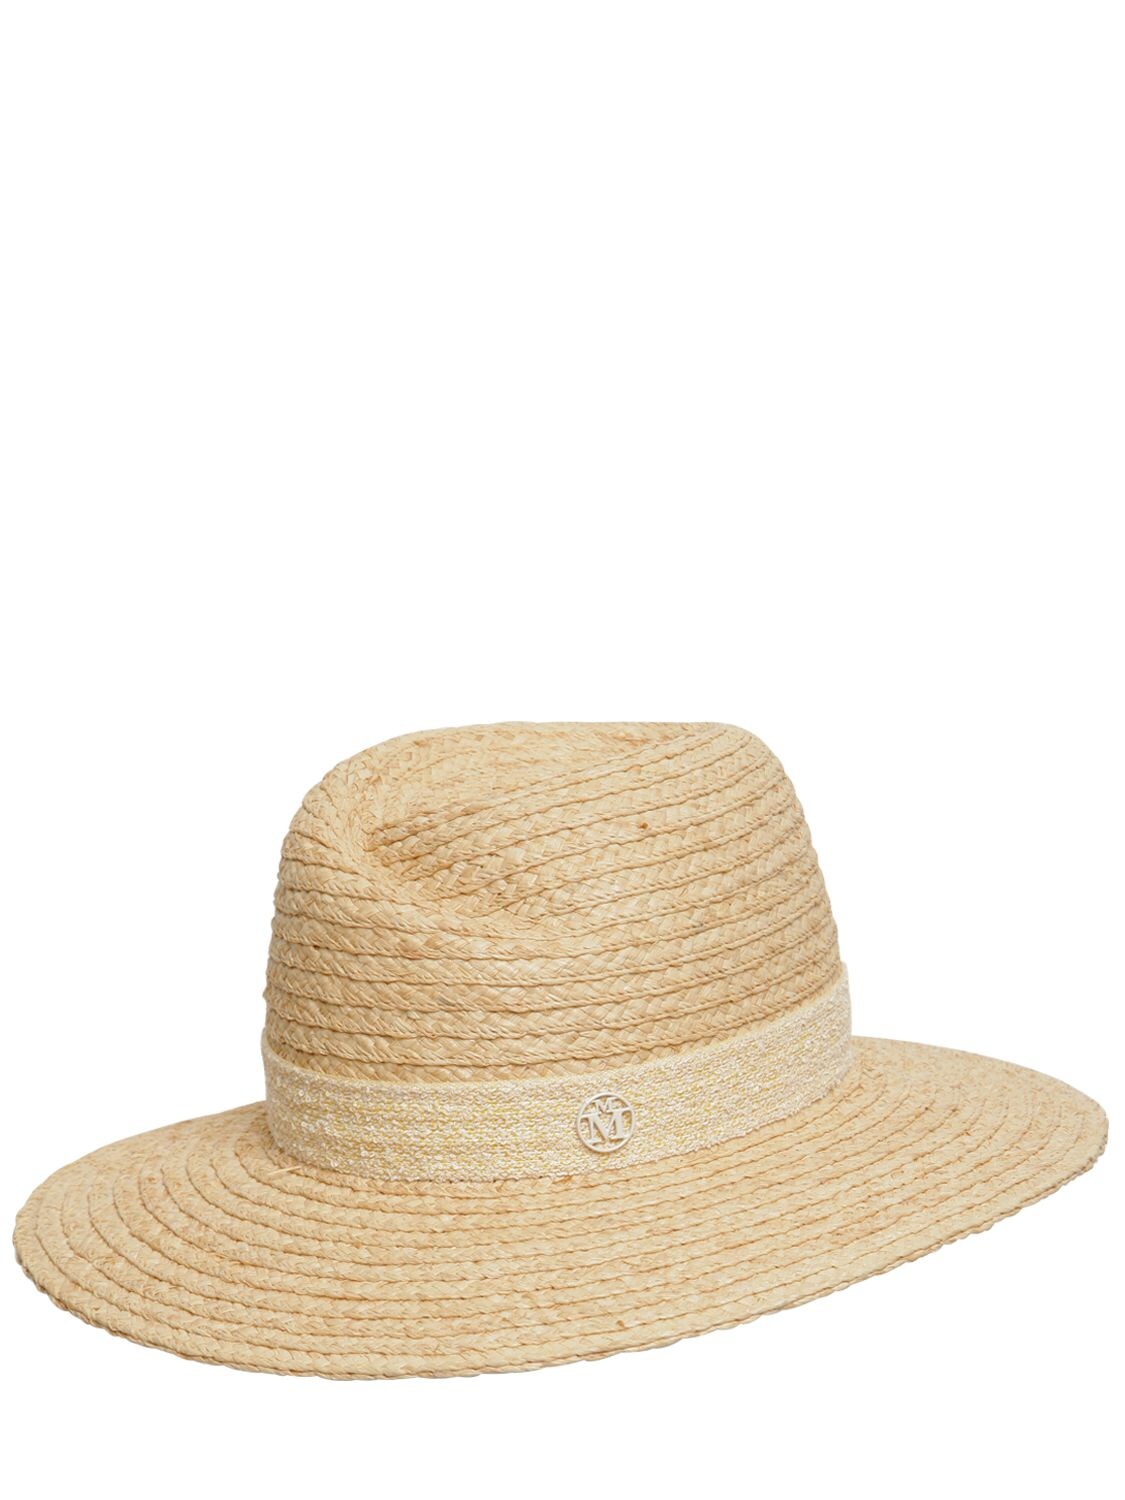 Maison Michel Virginie Natural Straw Fedora Hat